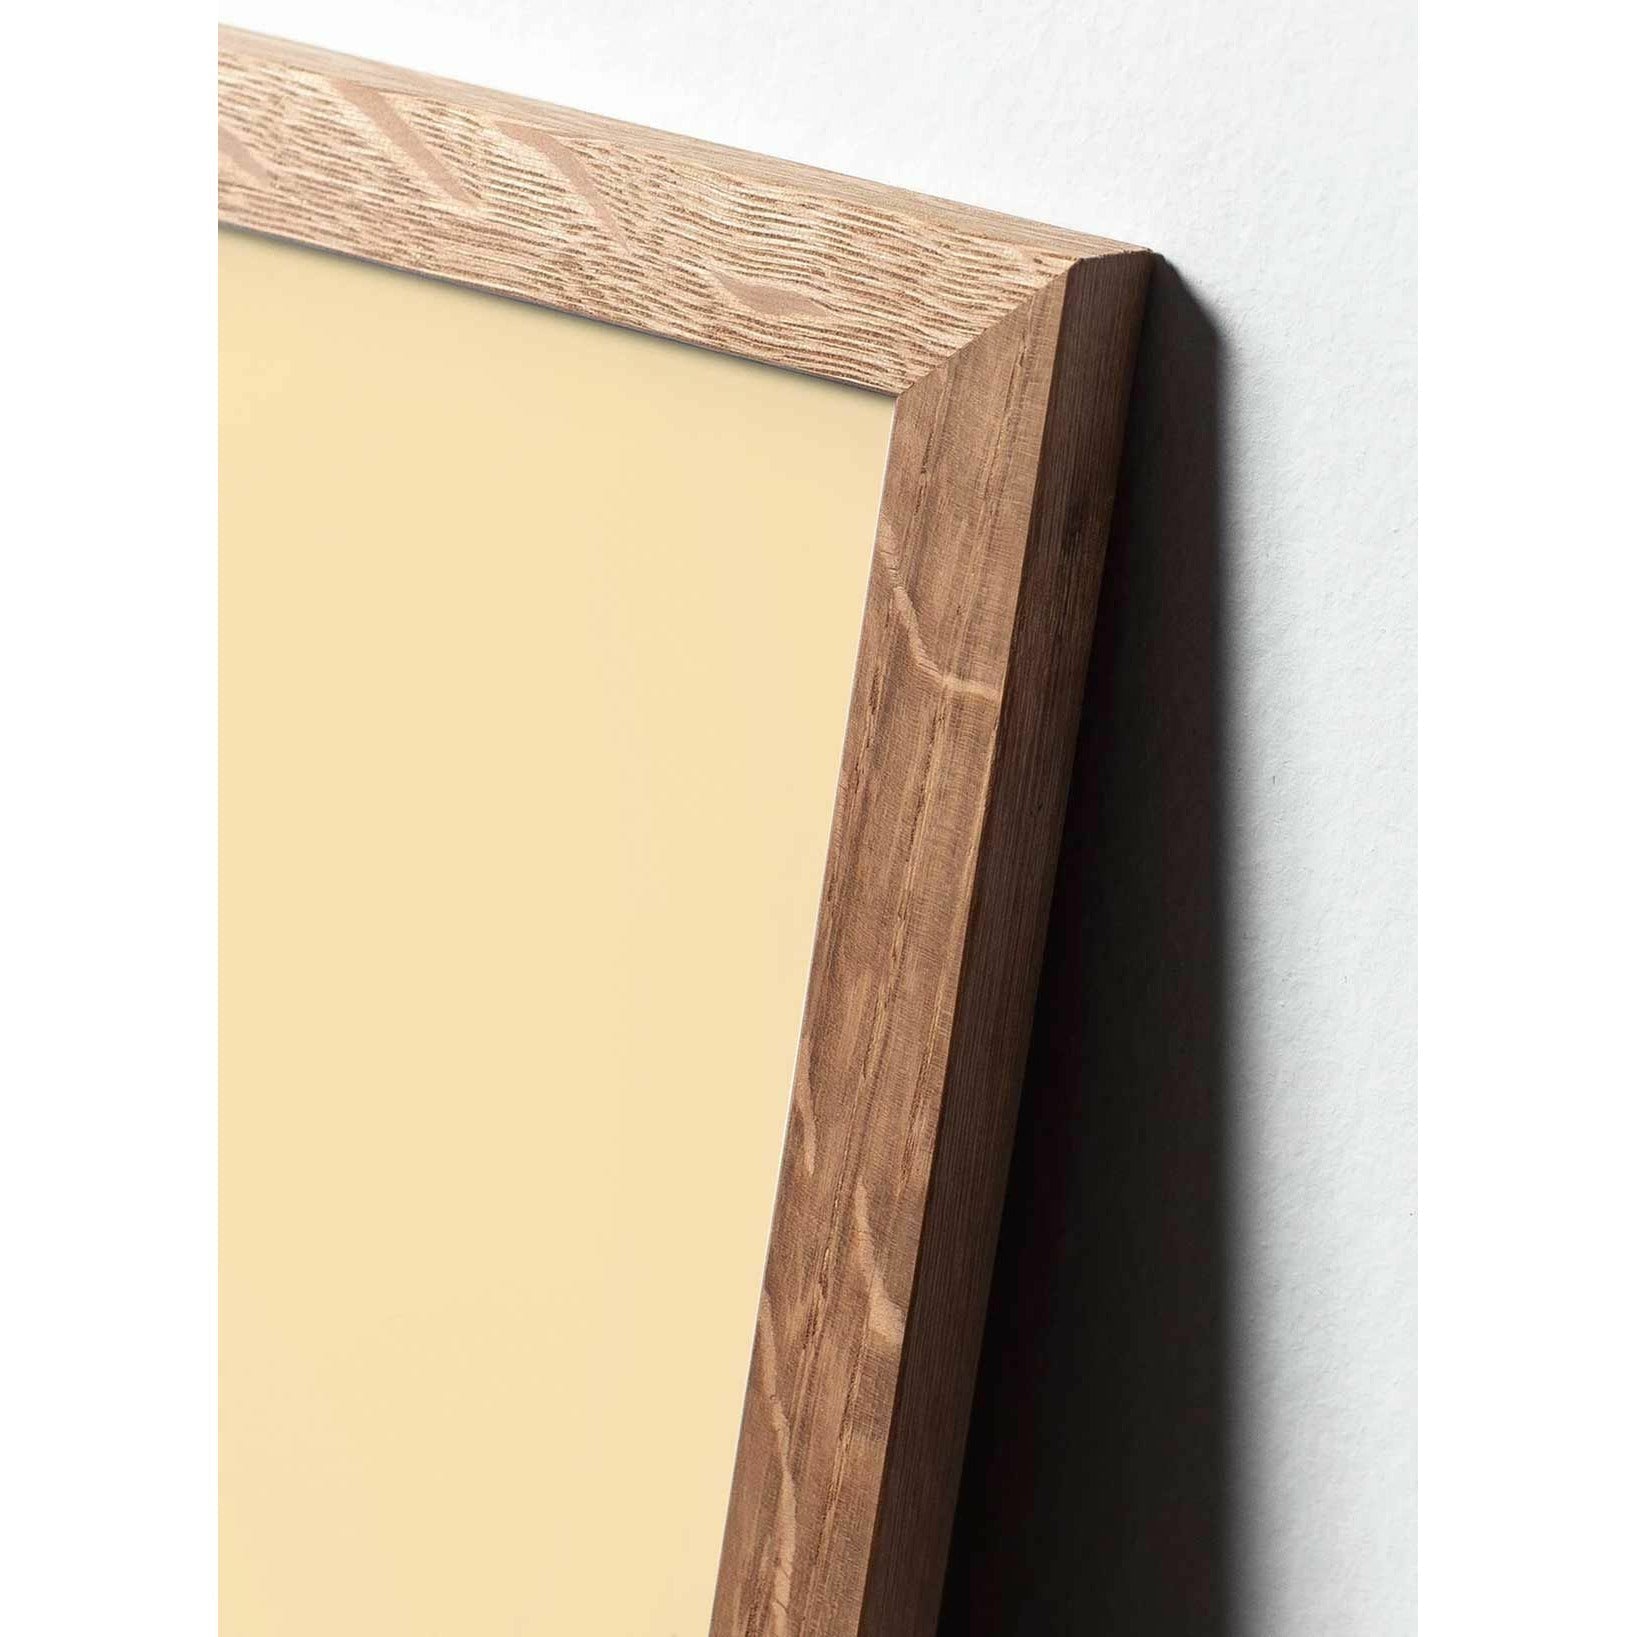 Póster de línea de cono de pino de creación, marco hecho de madera clara de 70x100 cm, fondo blanco